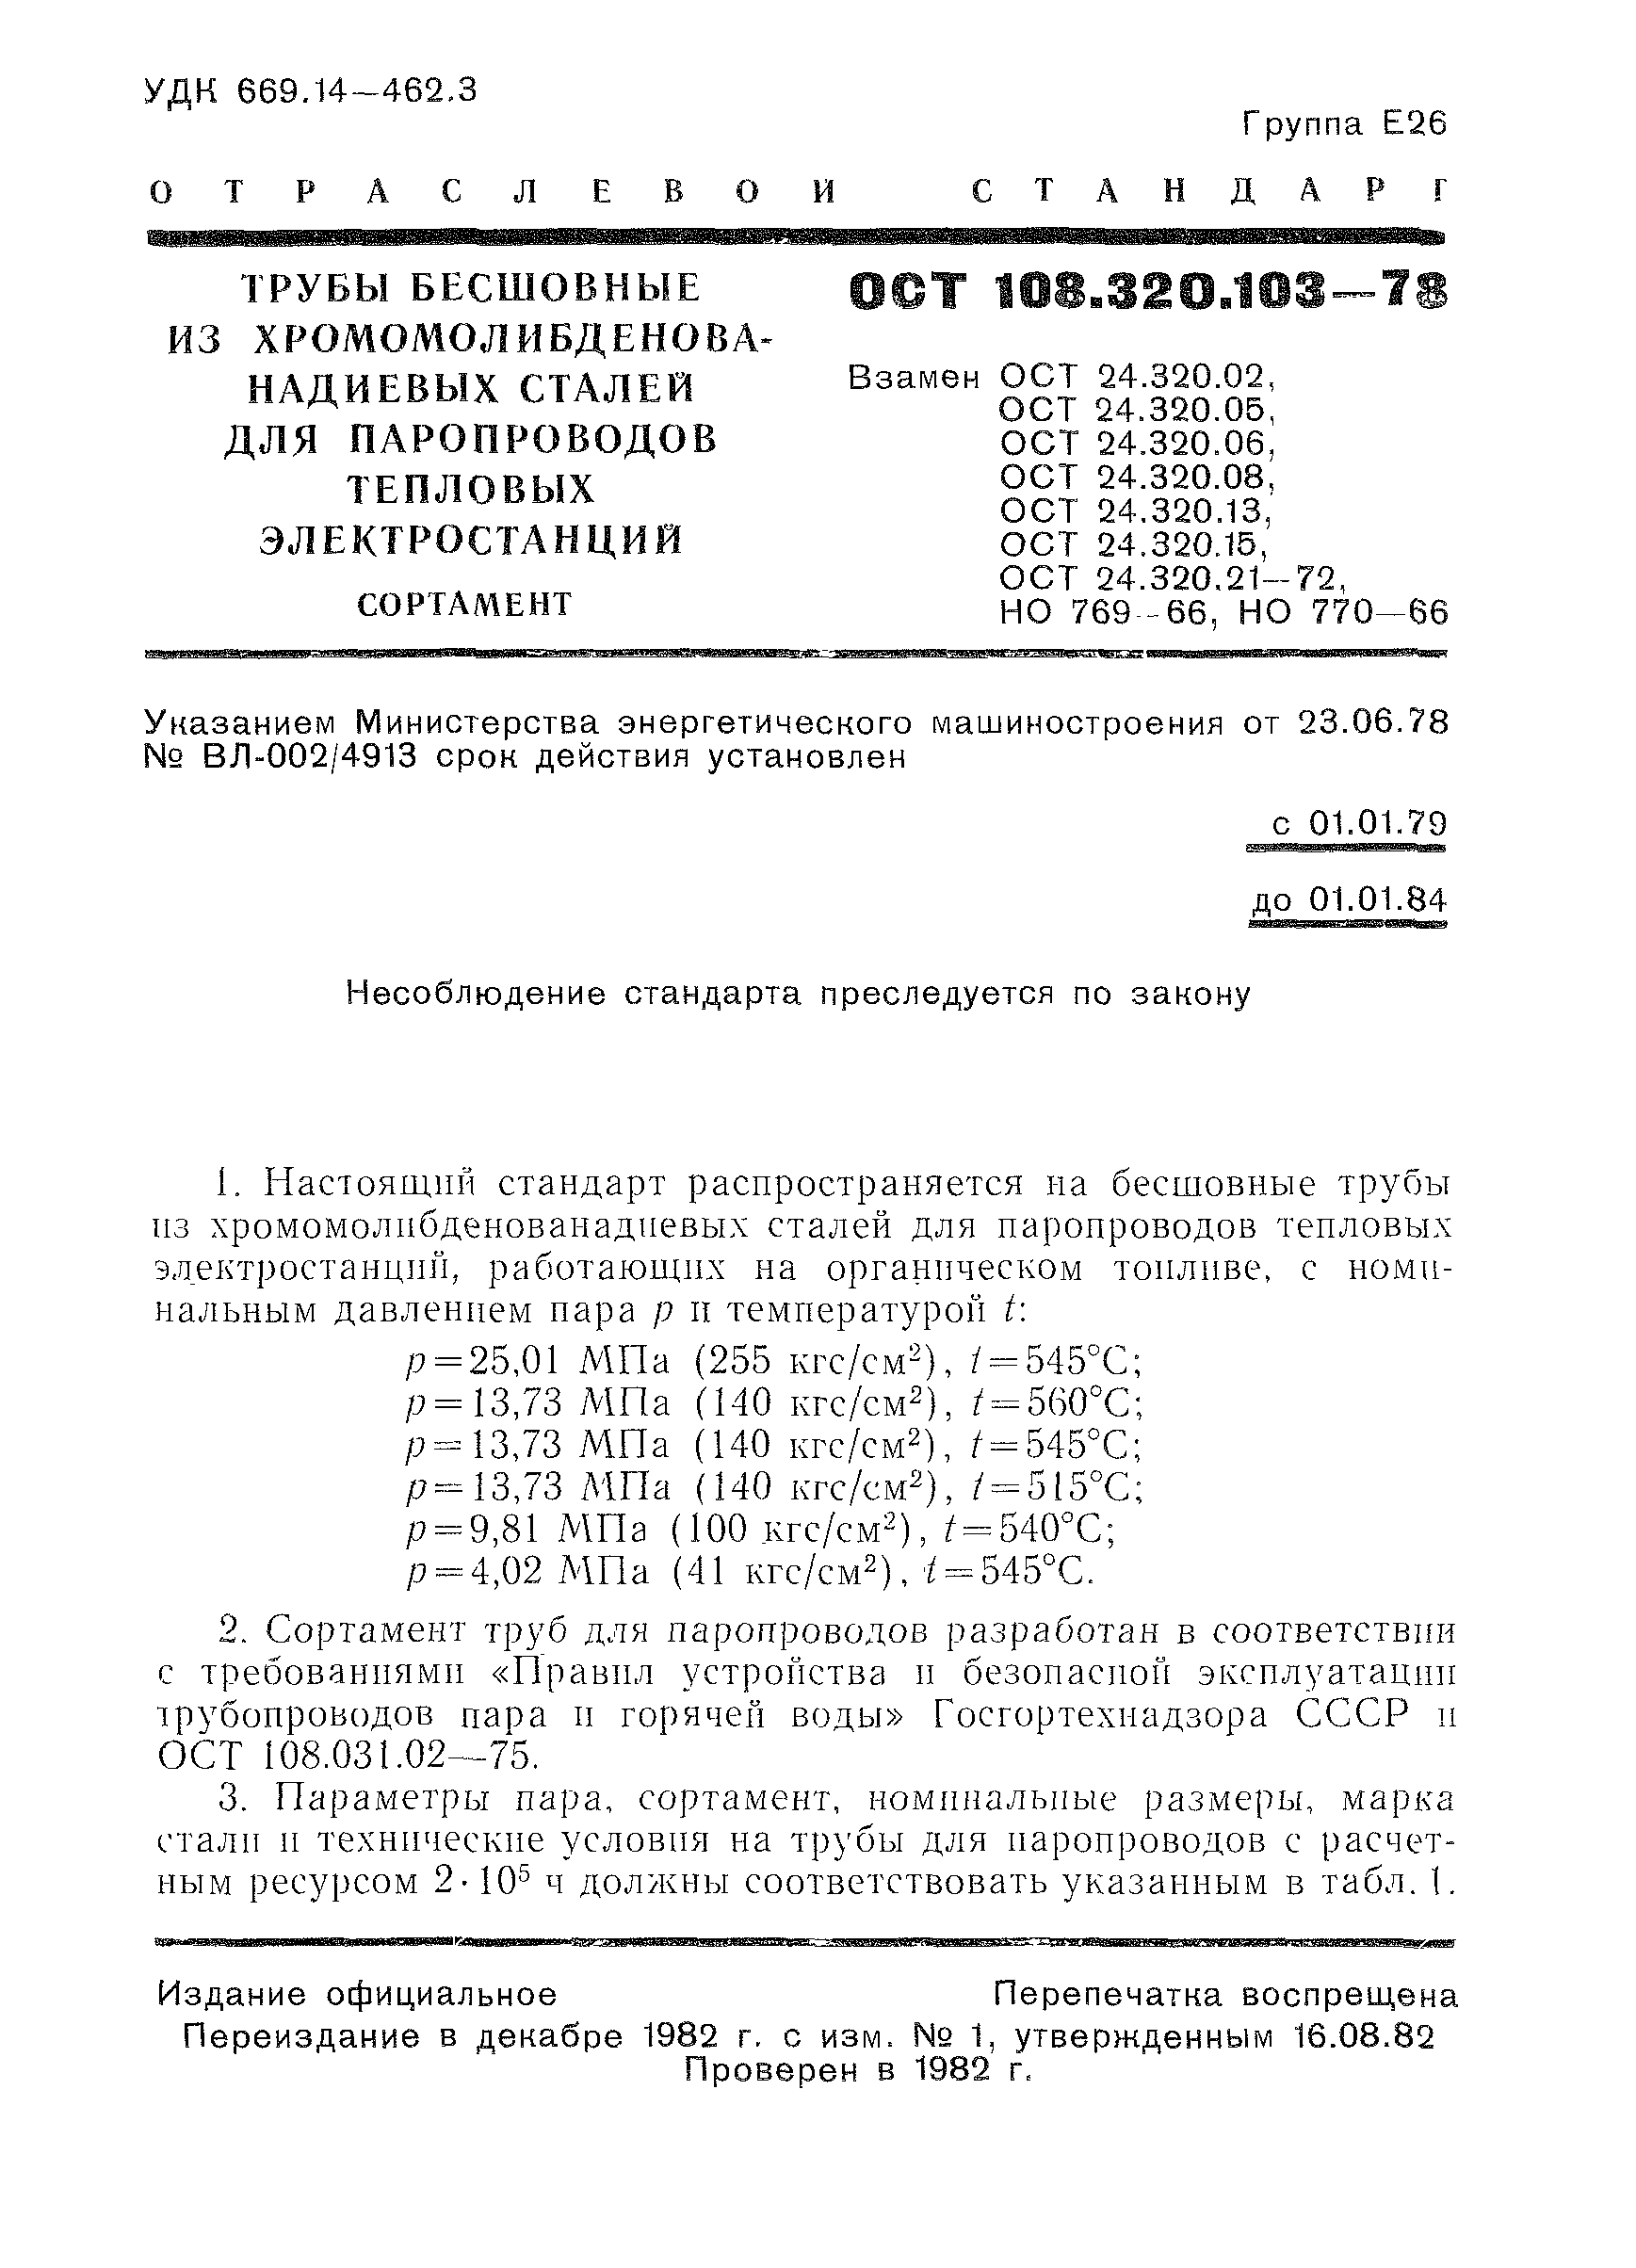 ОСТ 108.320.103-78